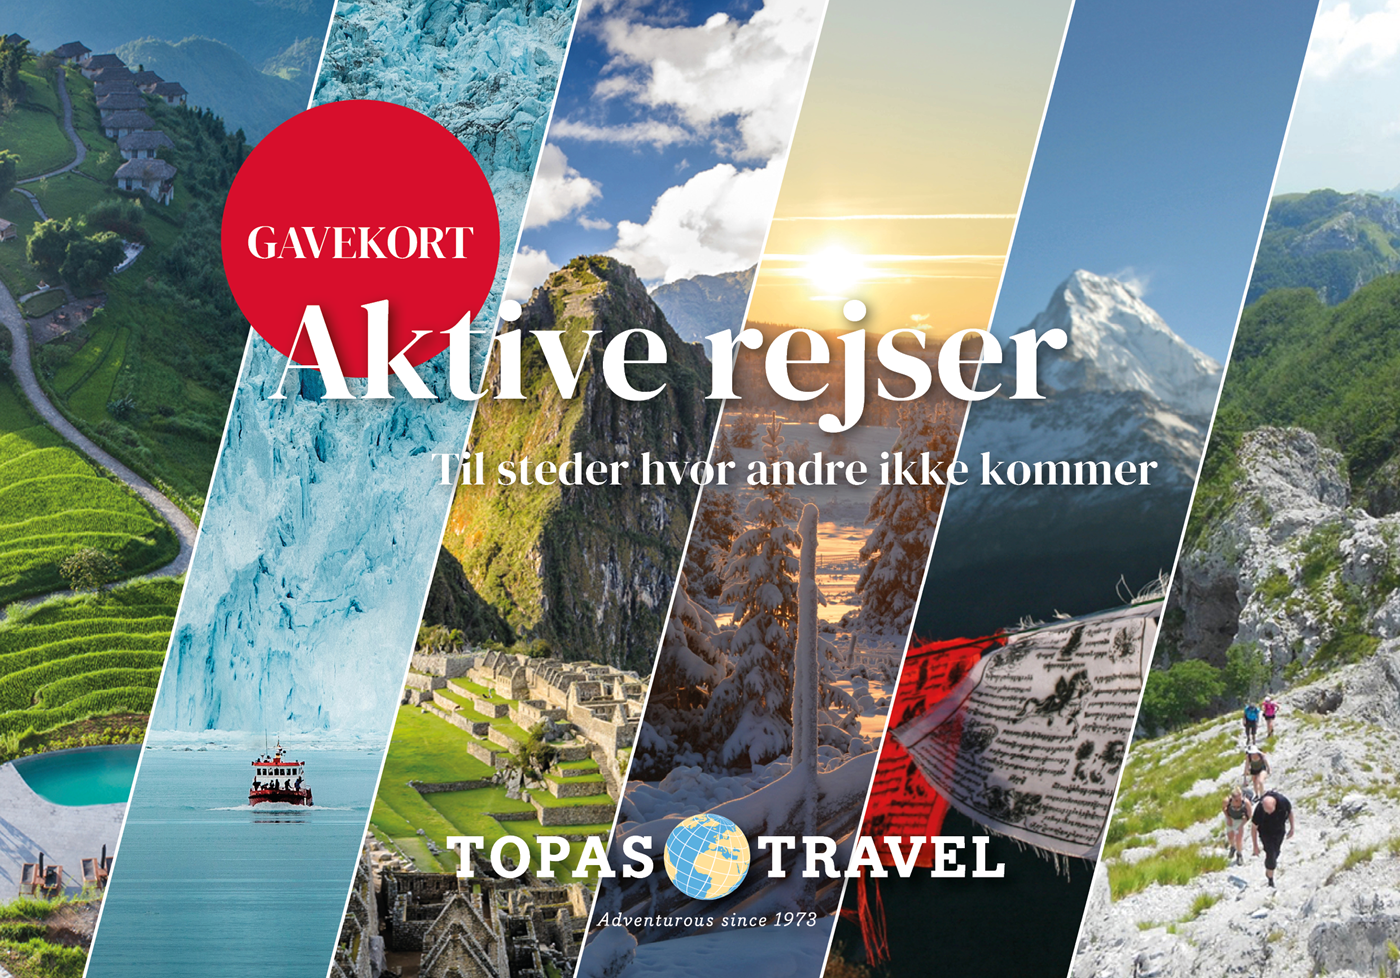 Collage med billeder af landskaber fra Vietnam, Grønland, Peru, Norge, Nepal og Italien, med teksten: "Gavekort. Aktive rejser til steder hvor andre ikke kommer. Topas Travel. Adventurous since 1973."